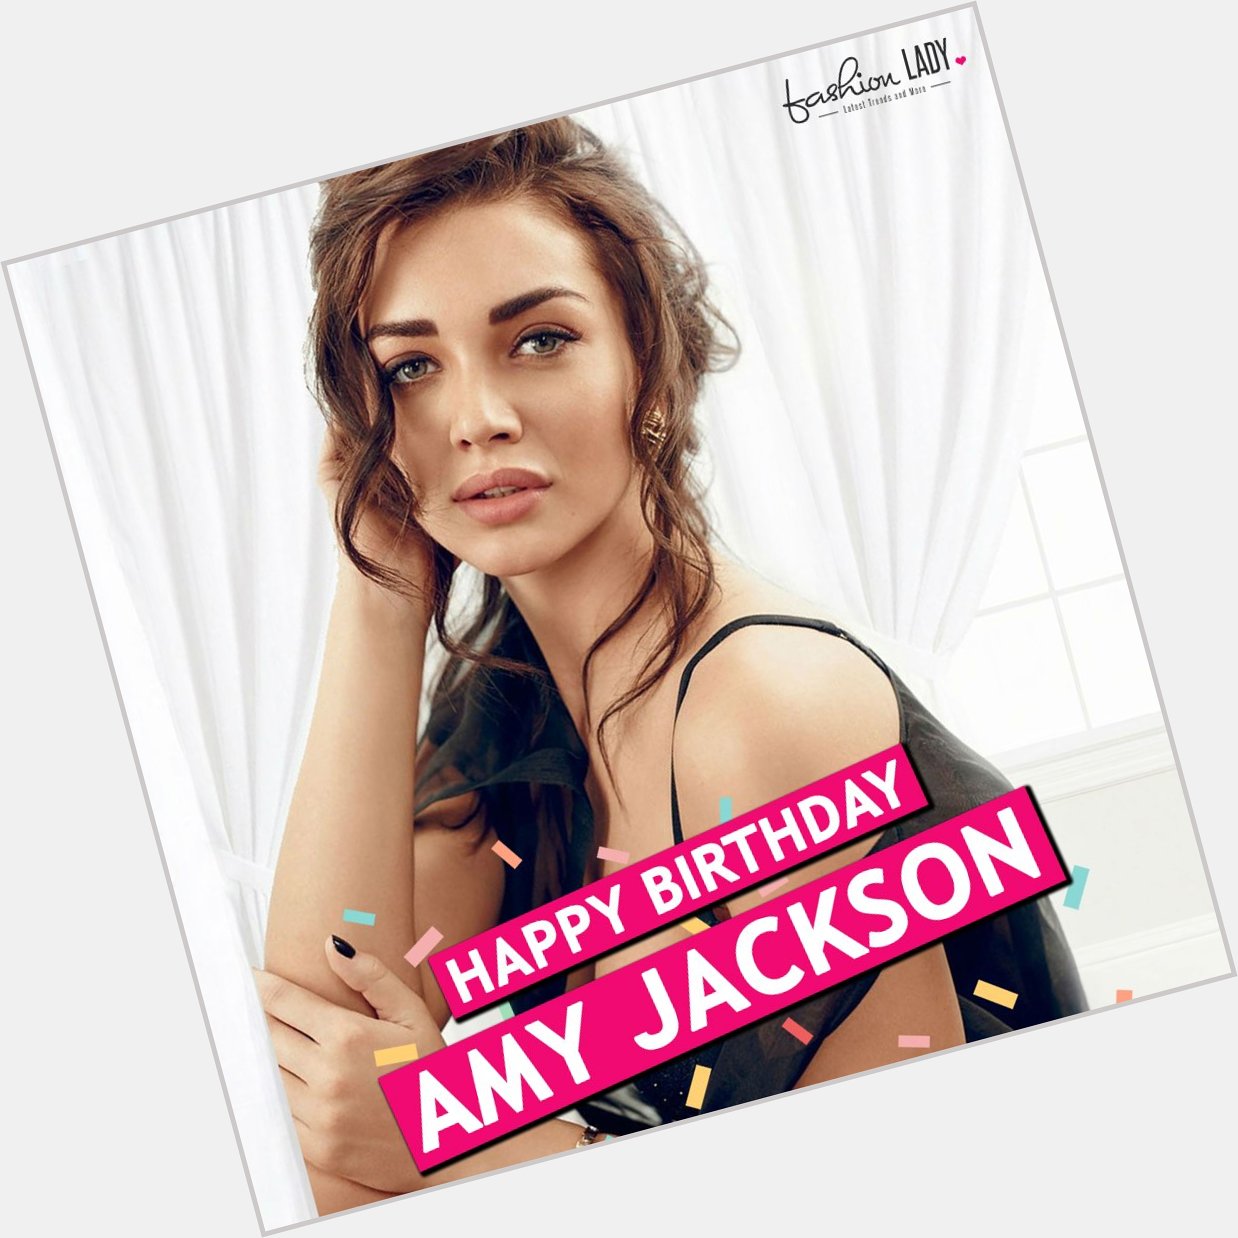 We Wish Gorgeous Amy Jackson A Very Happy Birthday!  